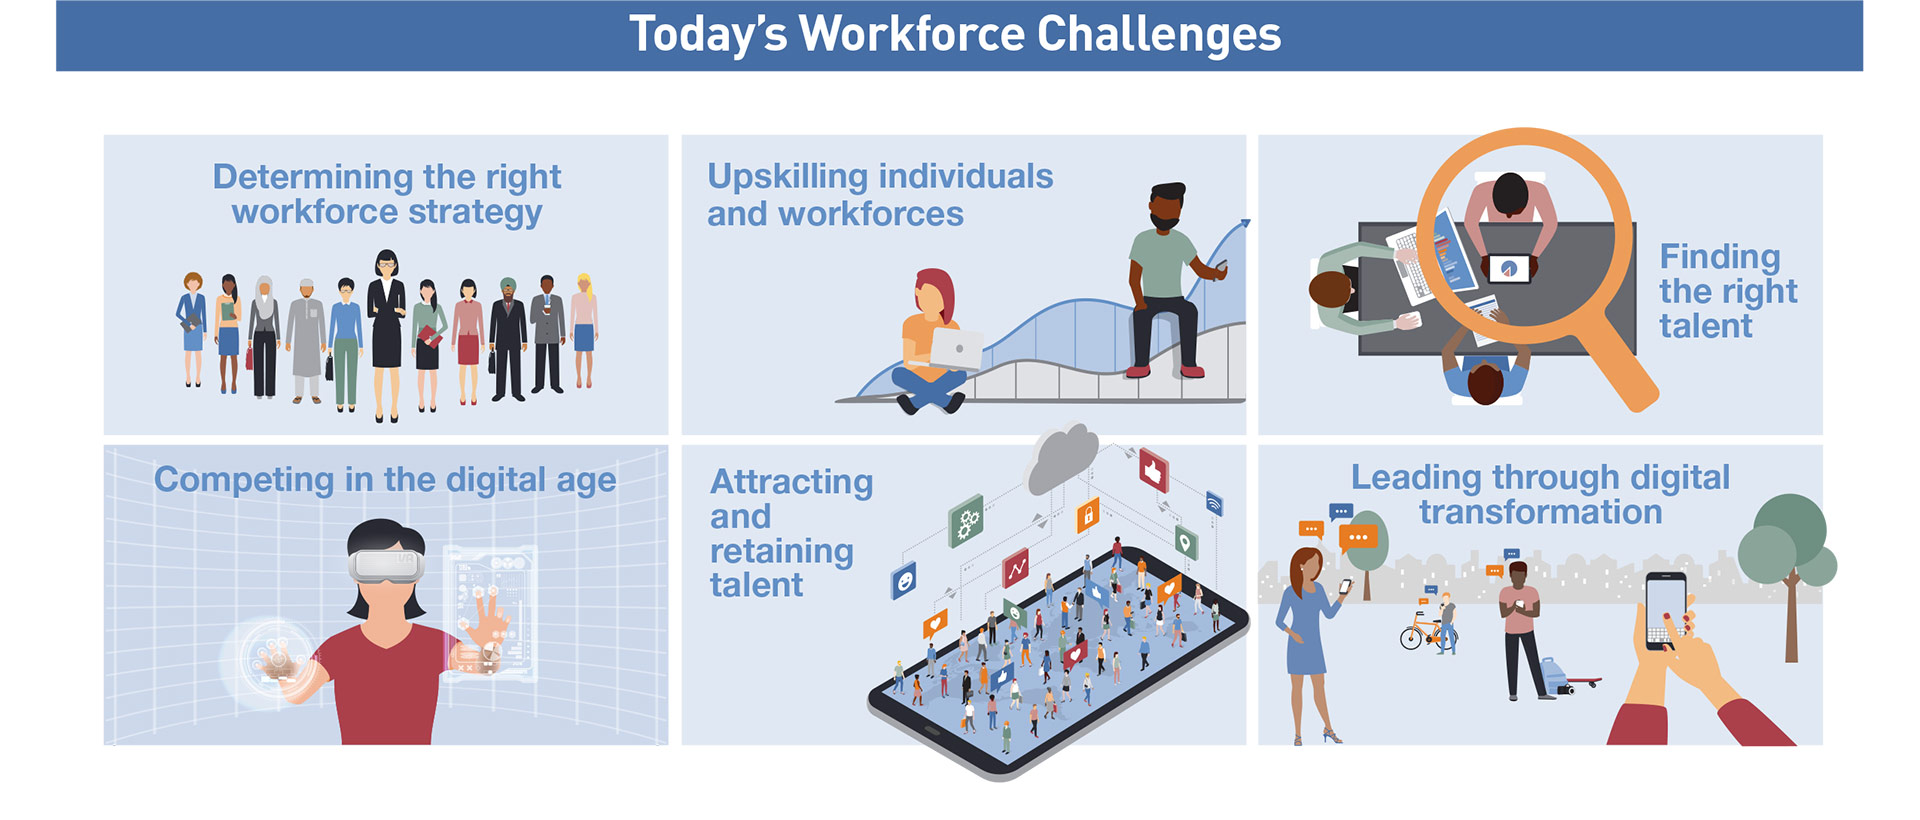 Today's Workforce Challenges